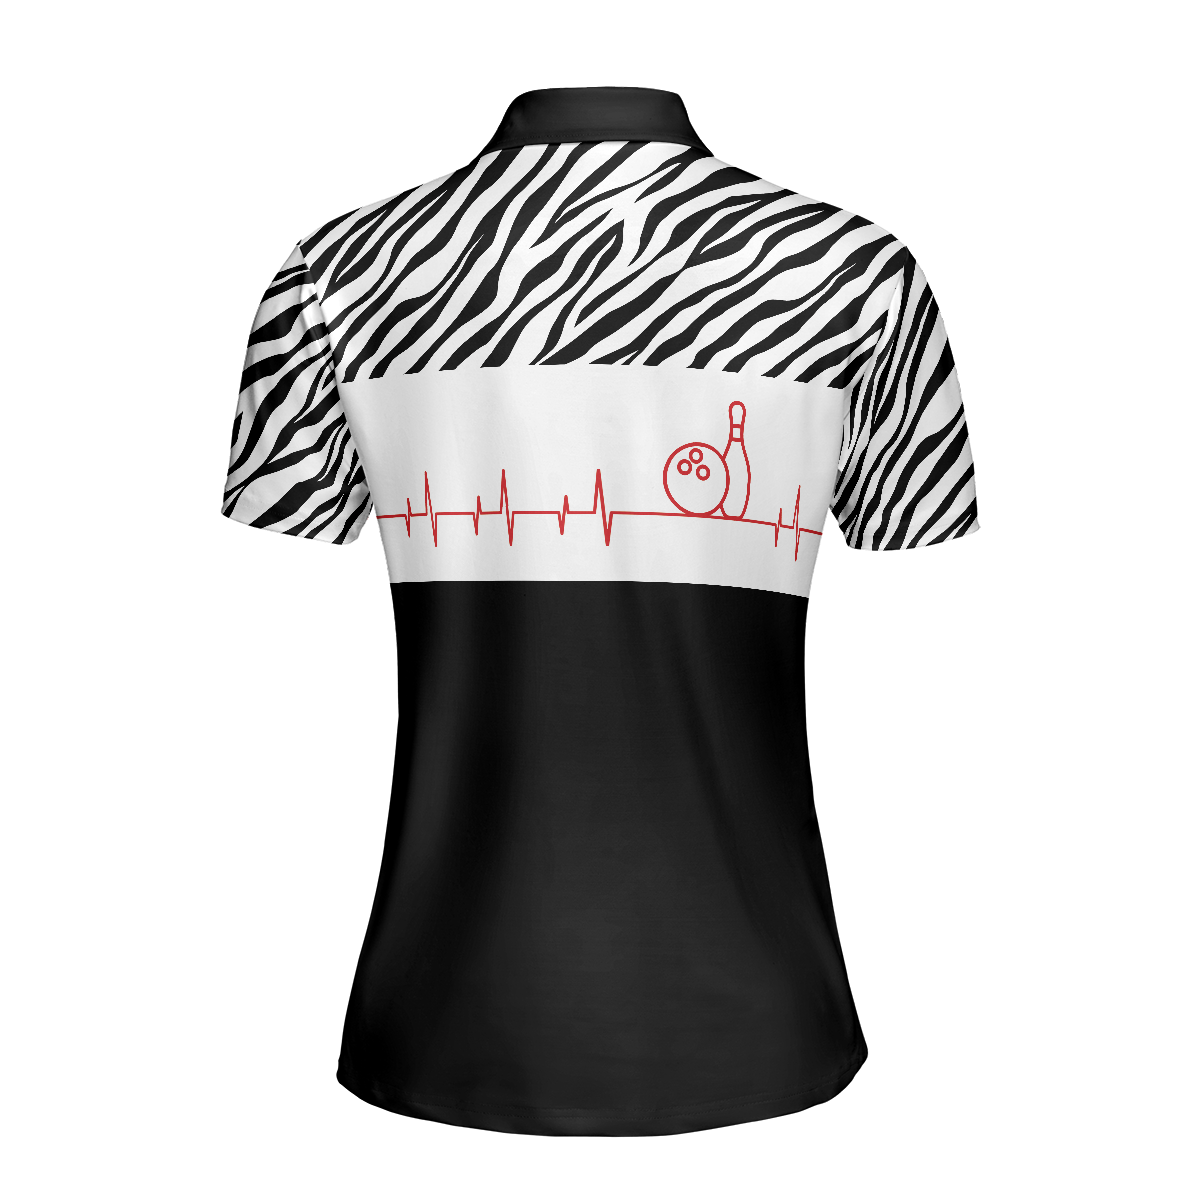 Bowling Heartbeat Zebra Pattern Short Sleeve Women Polo Shirt/ Bowling Shirt For Ladies/ Bowling Shirt Idea